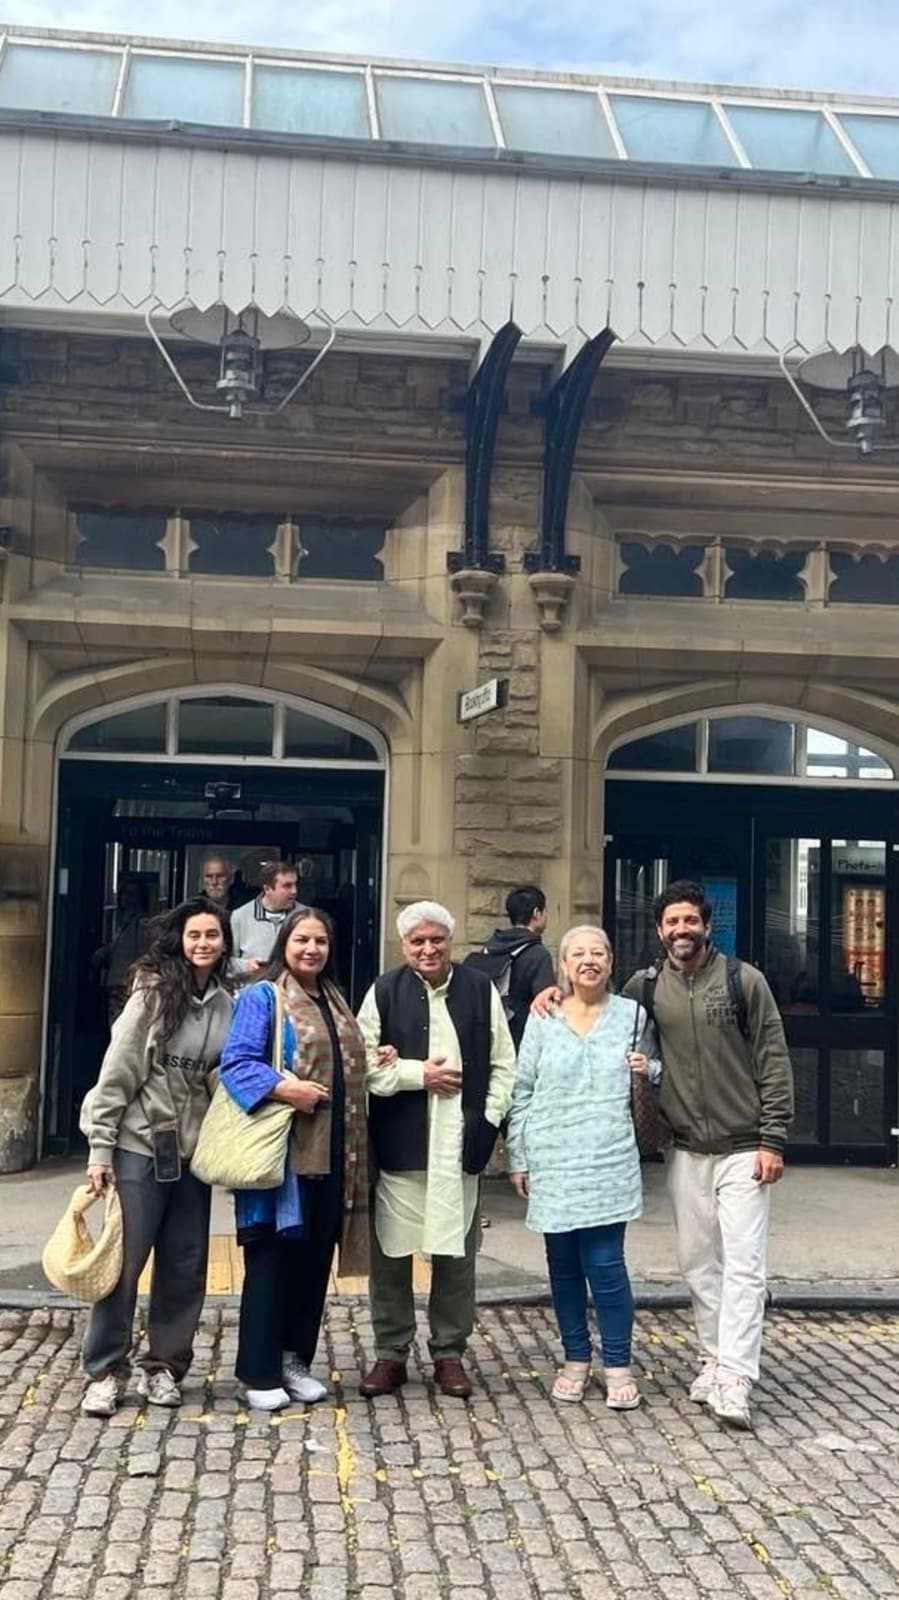 Shabana Azmi Shares Family Pics From London